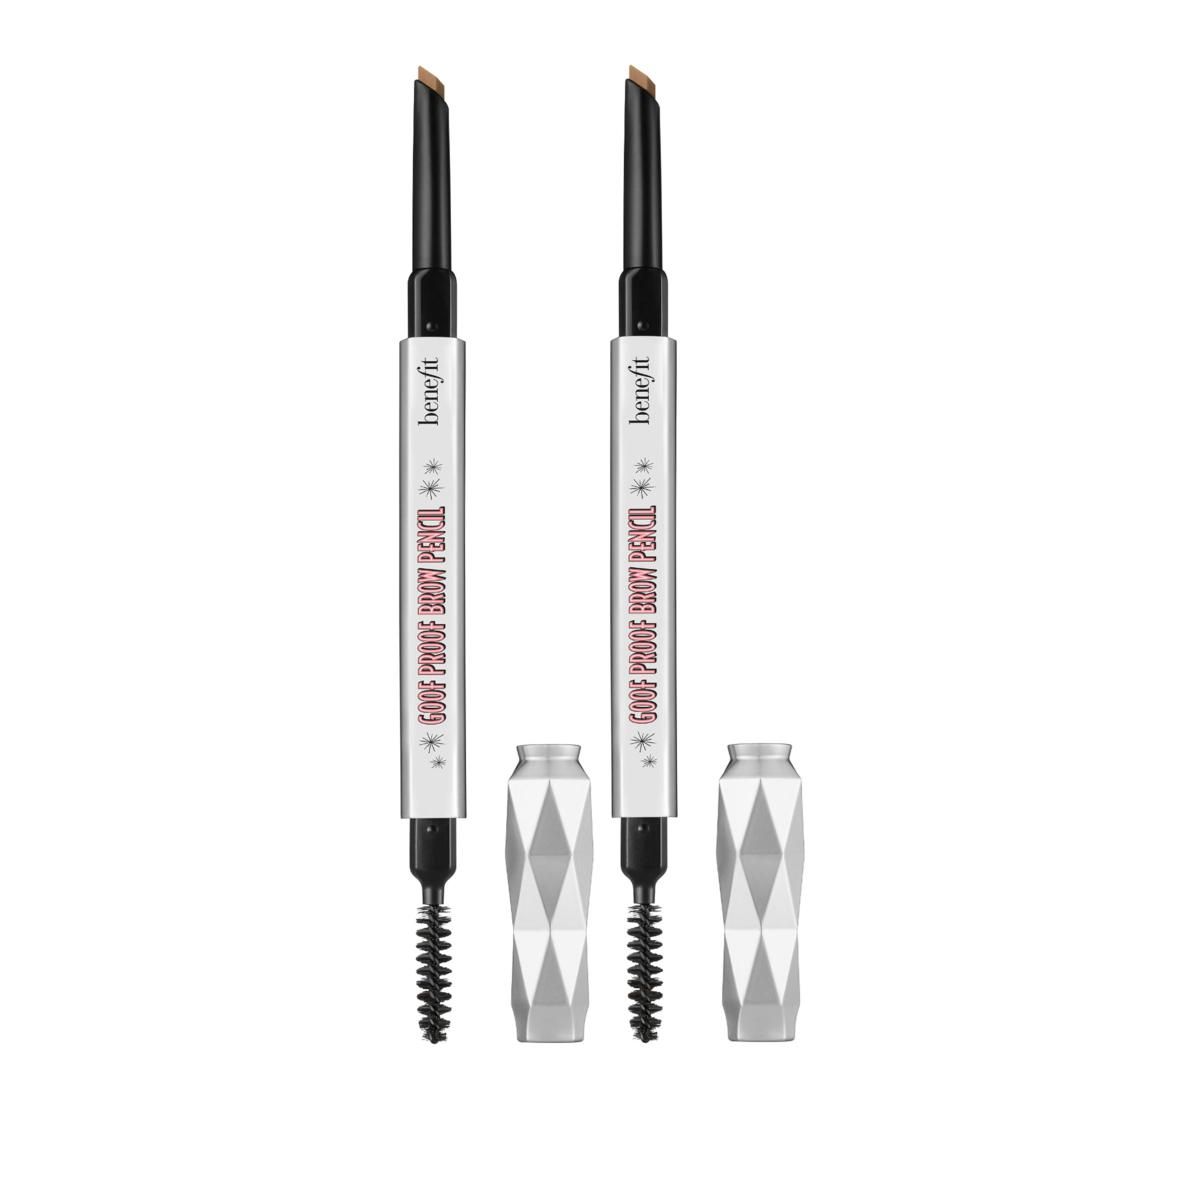 Benefit Cosmetics Goof Proof Shade 3 Medium Brow Pencil Duo - 8920932 | HSN | HSN